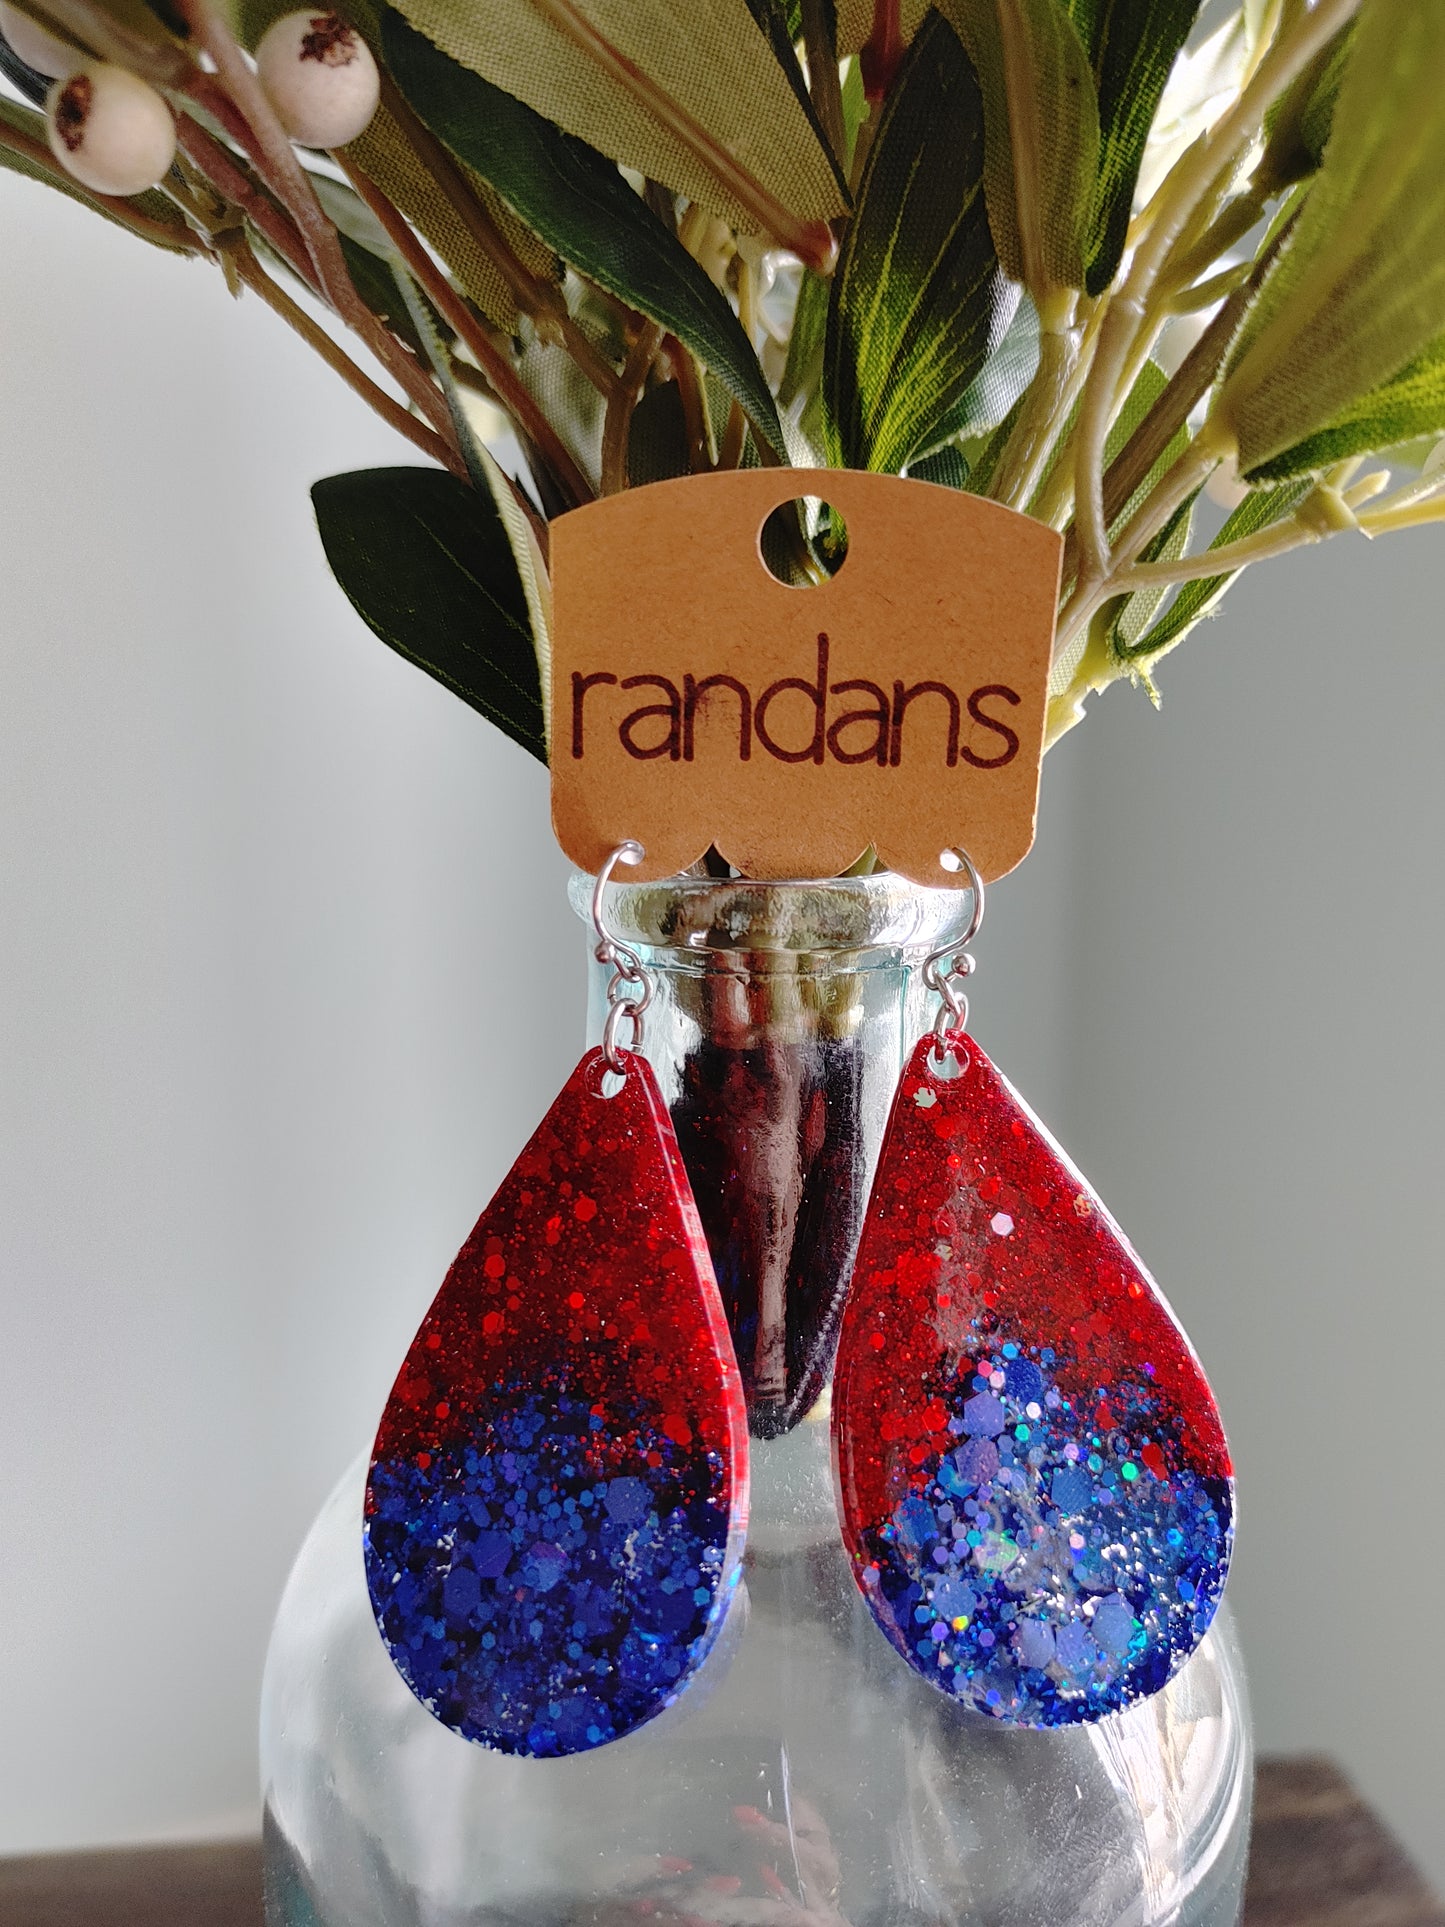 Randan's Red & Blue Glitter Earrings